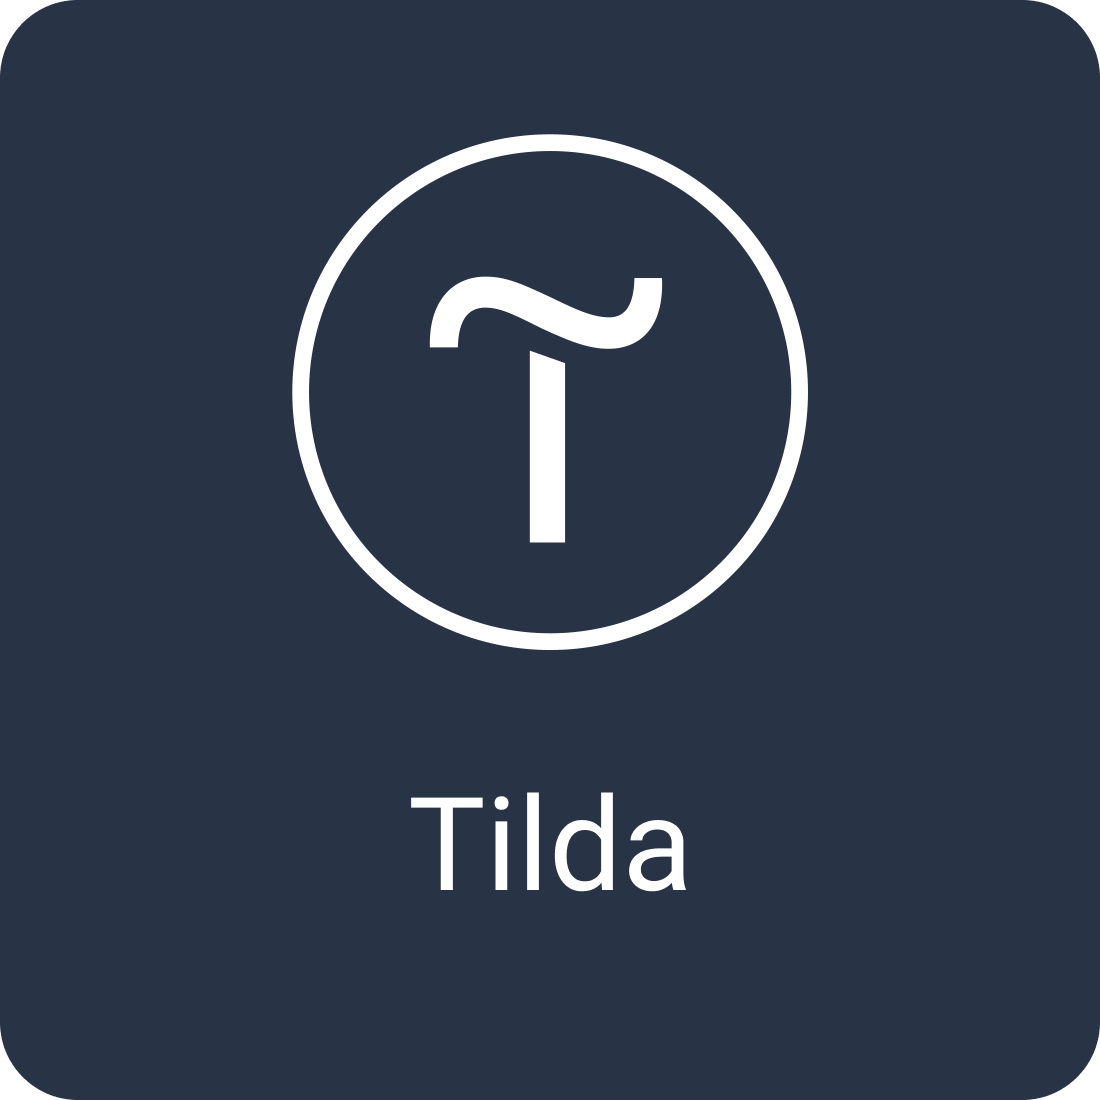 Tilda download. Тильда логотип. Тильда конструктор сайтов. Tilda приложение. Сайты на Tilda.